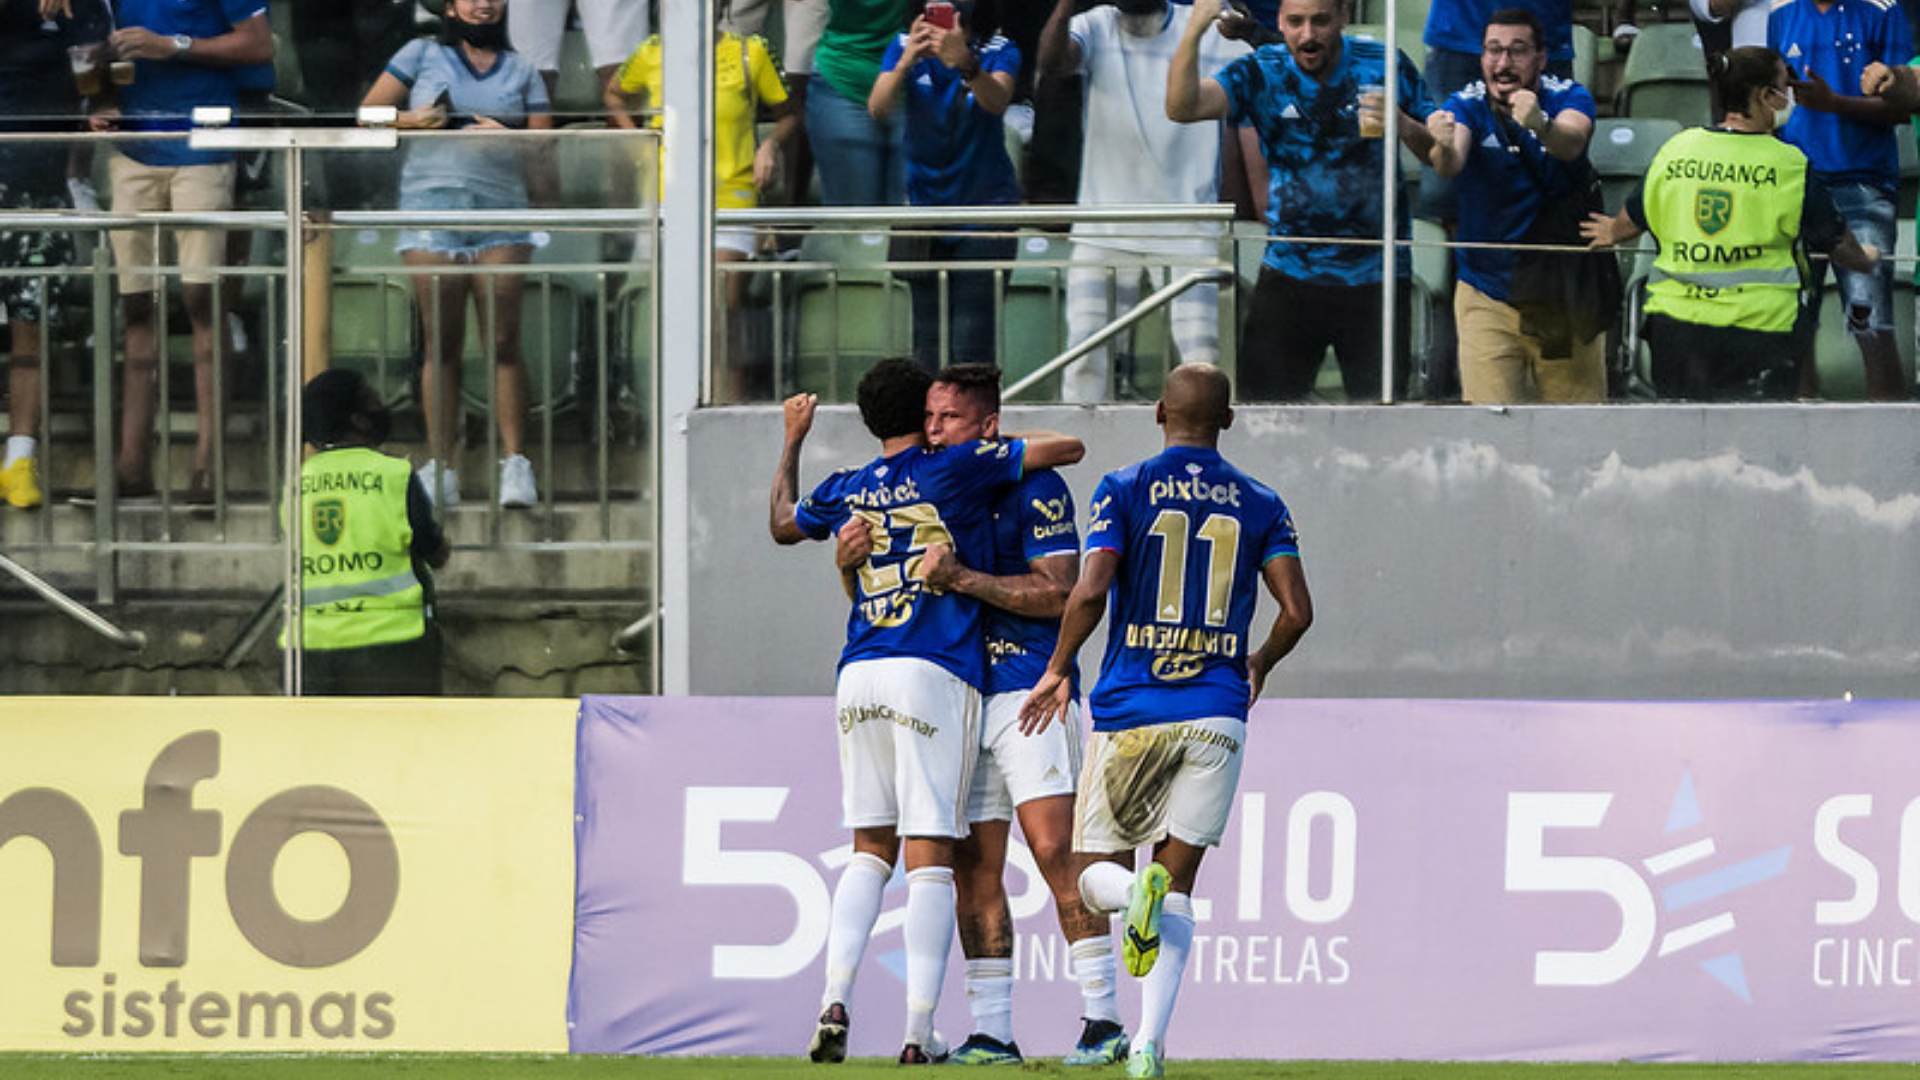 Jogadores do Cruzeiro na partida em que Waguininho foi expulso